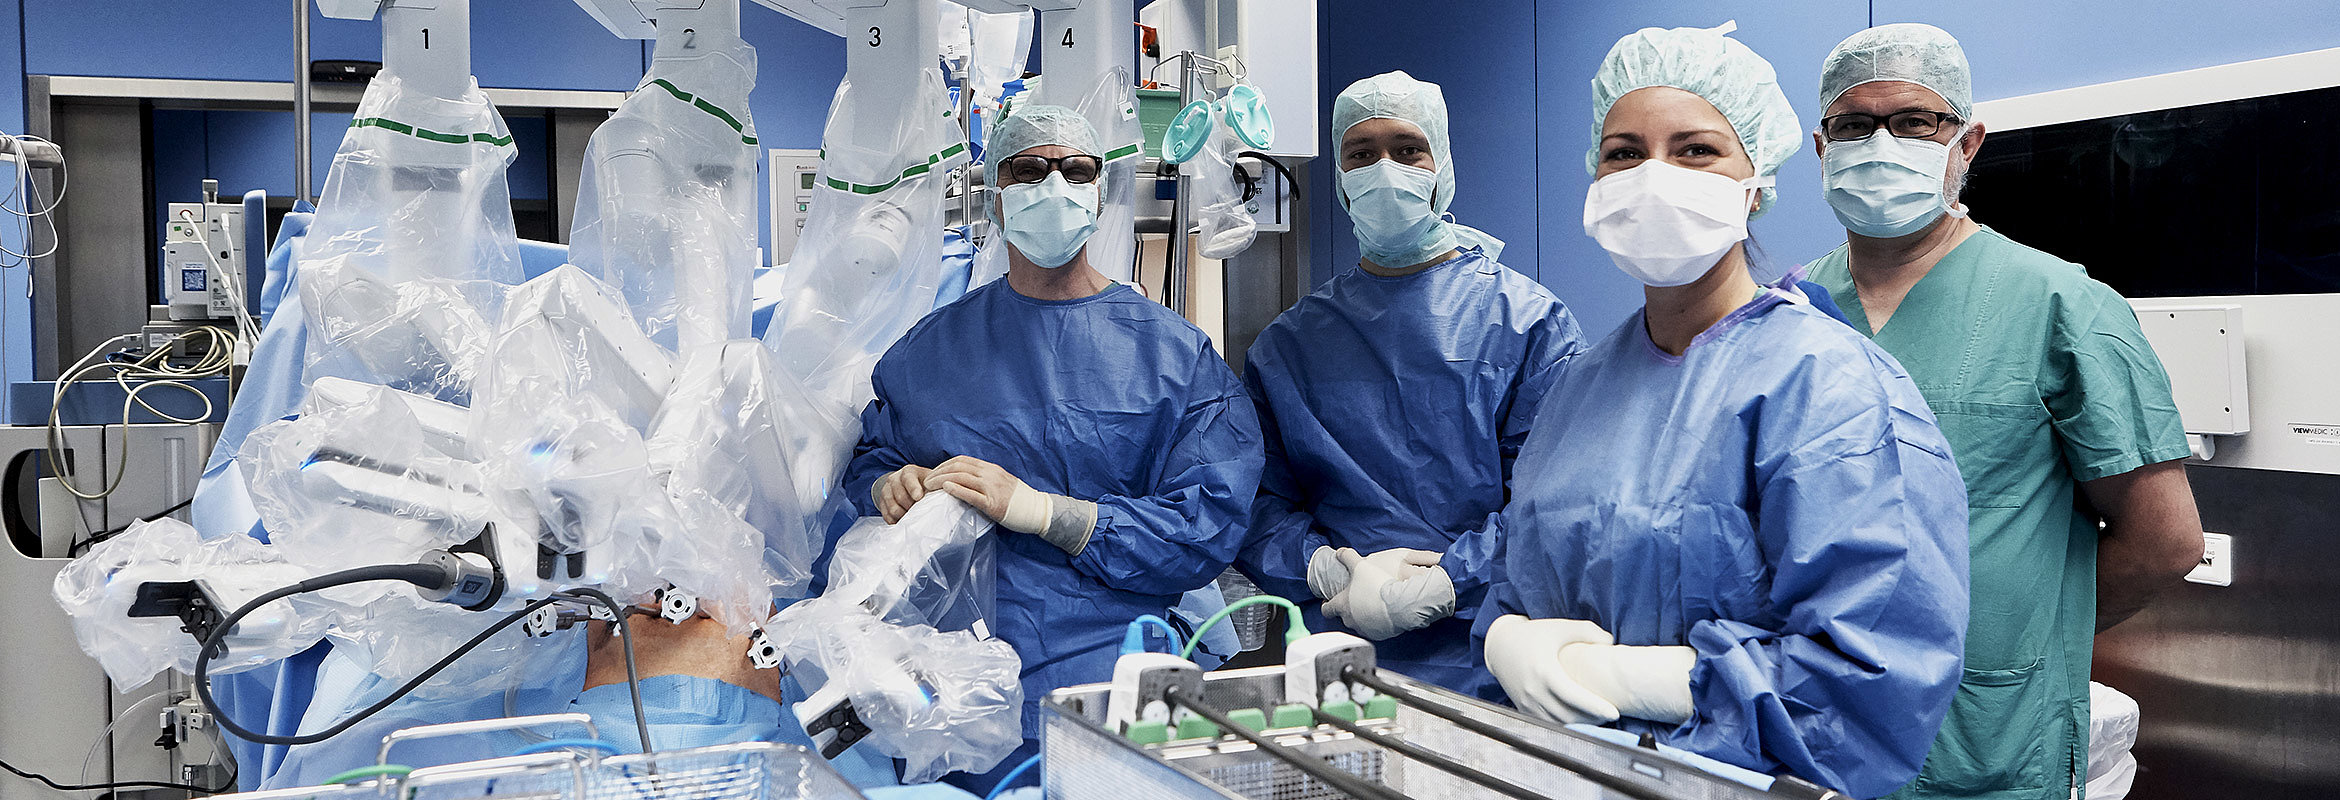 Priv.-Doz. Dr. med. Dr. med. habil. Christian Mönch, Chefarzt der Chirurgie in Kaiserlautern, mit seinem Team im OP